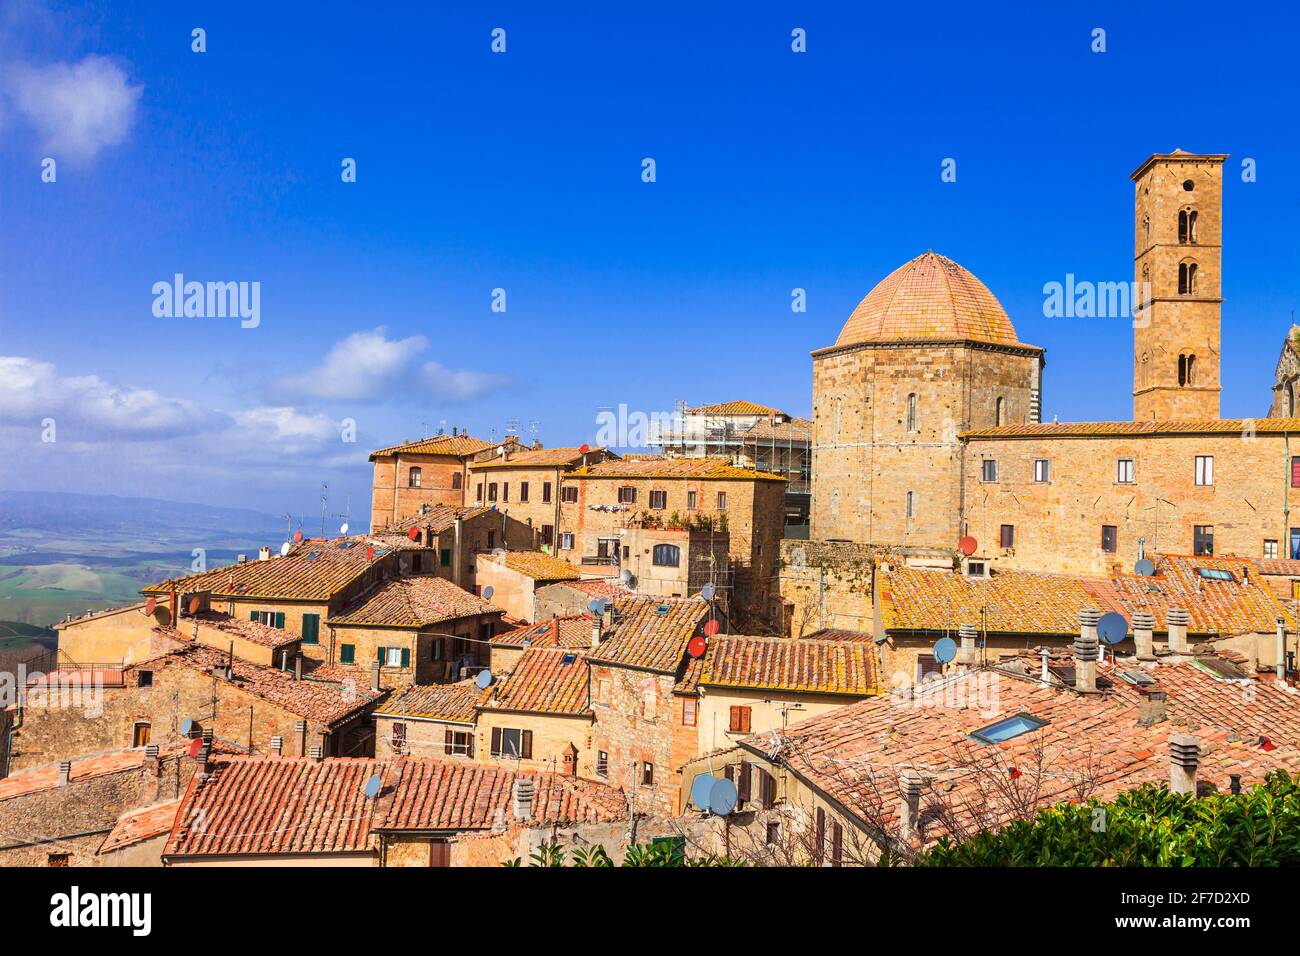 Historic medieval towns (borgo) of Tuscany, Volterra. Italy travel and landmarks Stock Photo